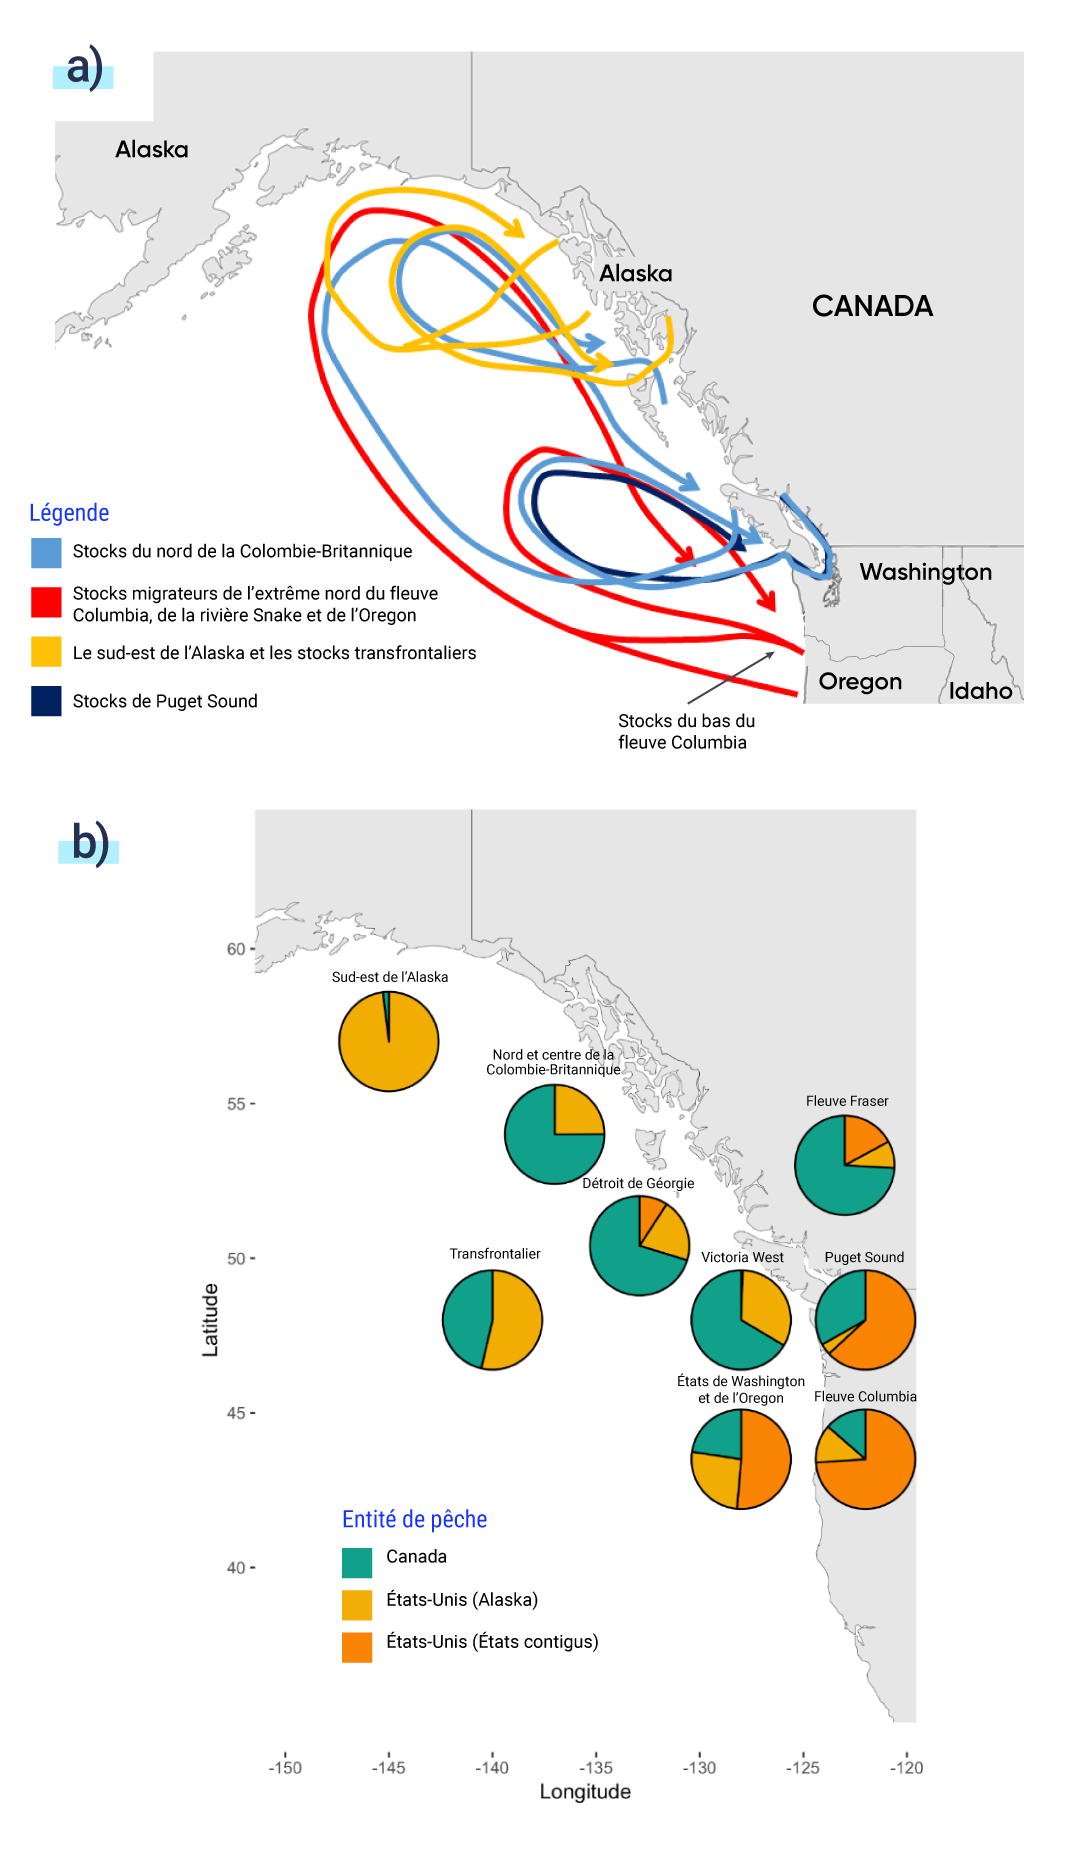 La figure A est une carte du nord ouest du Pacifique montrant les profils migratoires des principaux groupes de stocks de saumon quinnat. Les stocks de Puget Sound migrent autour de l’île de Vancouver. Les stocks du nord de la Colombie Britannique migrent autour de l’île de Vancouver, vers le nord en direction de l’Alaska et vers la côte nord de la Colombie Britannique. Les stocks du sud est de l’Alaska et les stocks transfrontaliers migrent de la côte de l’Alaska vers le nord est. Les stocks du Lower Columbia, de la Snake River et de l’Oregon migrent depuis les côtes de l’État de Washington et de l’Oregon, vers le nord en direction de l’Alaska, puis reviennent par Puget Sound.   La figure B est une carte du nord ouest du Pacifique à laquelle ont été ajoutés des graphiques circulaires pour représenter la proportion du stock principal de saumon quinnat de chaque région capturé par des entités de pêche individuelles. Les pêcheries américaines de l’Alaska capturent la majeure partie du stock du sud est de l’Alaska. Les pêcheries canadiennes capturent la plupart des stocks du fleuve Fraser, du nord et du centre de la Colombie Britannique, du détroit de Géorgie et de l’ouest de Victoria, et une petite partie est capturée par les pêcheries américaines en Alaska. Les pêcheries des États contigus des États Unis capturent la plupart des stocks de Puget Sound, du fleuve Columbia, de l’État de Washington et de l’Oregon, tandis que les pêcheries du Canada et de l’Alaska en capturent une plus petite proportion.